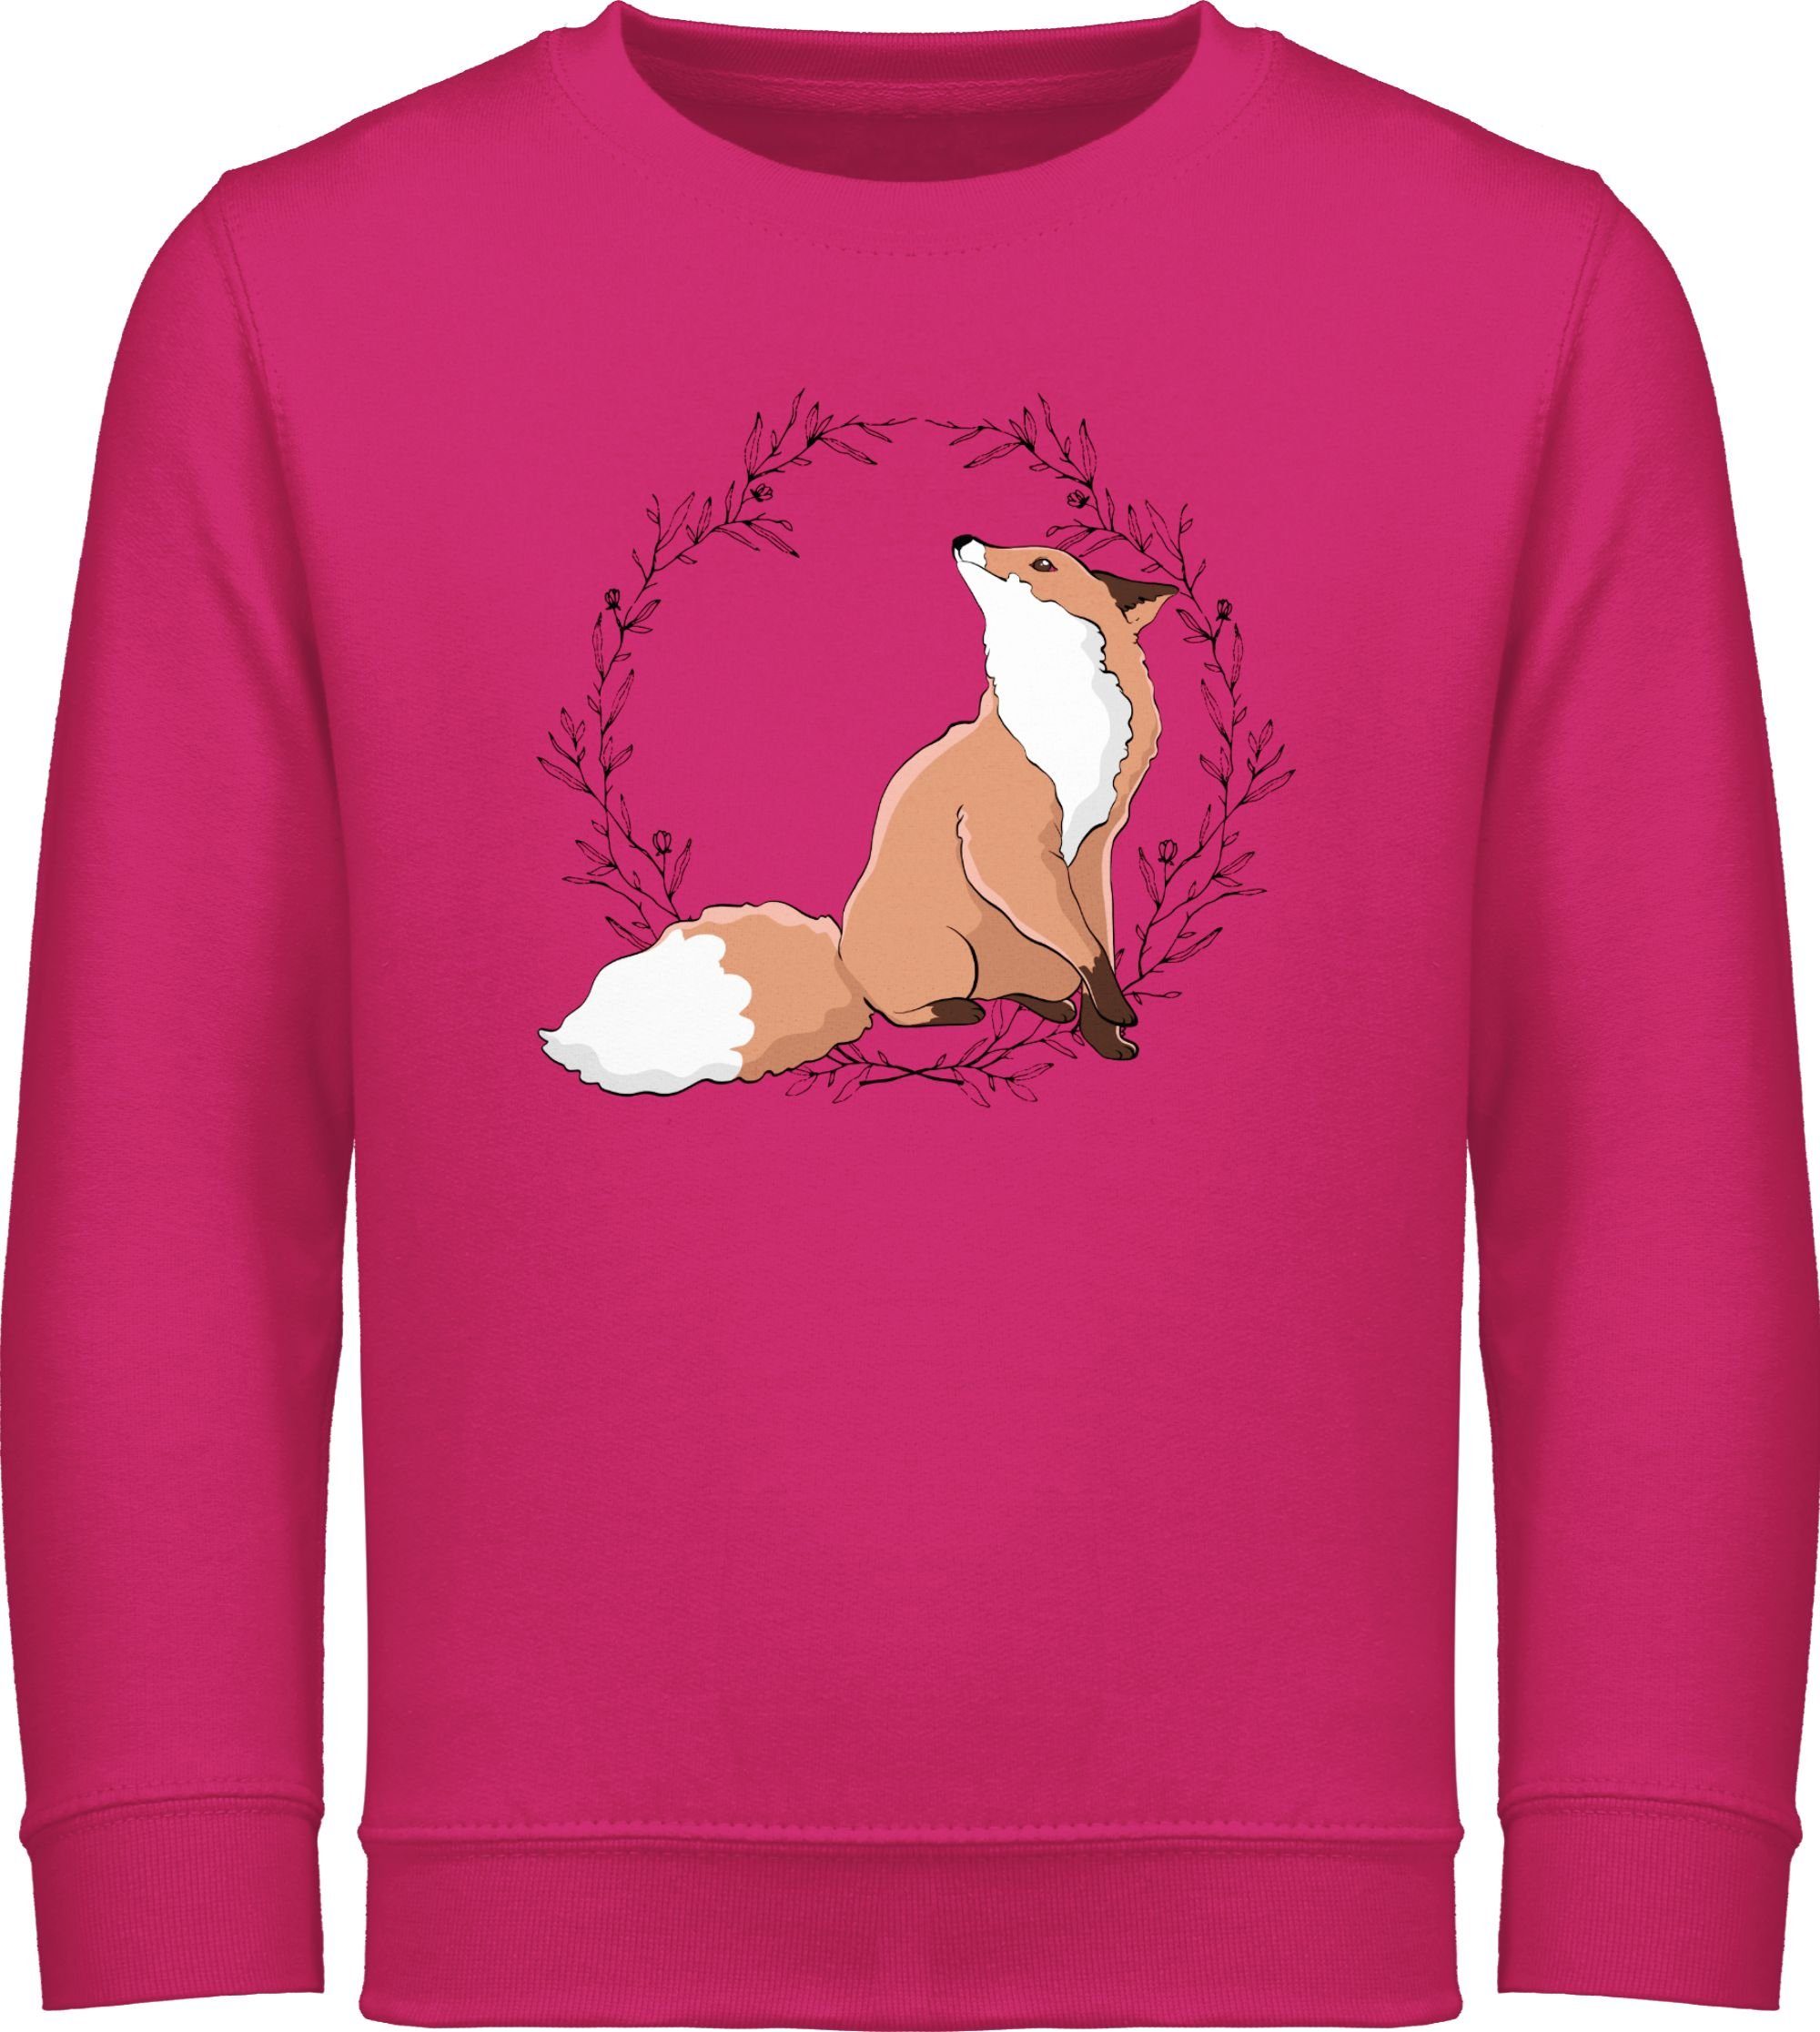 Shirtracer Sweatshirt »Fuchs mit Blumenkranz - Tiermotiv Animal Print -  Kinder Premium Pullover« hoody tiermotiv fuchs - kapuzenpullover fuchsmotiv  - langarm fox online kaufen | OTTO